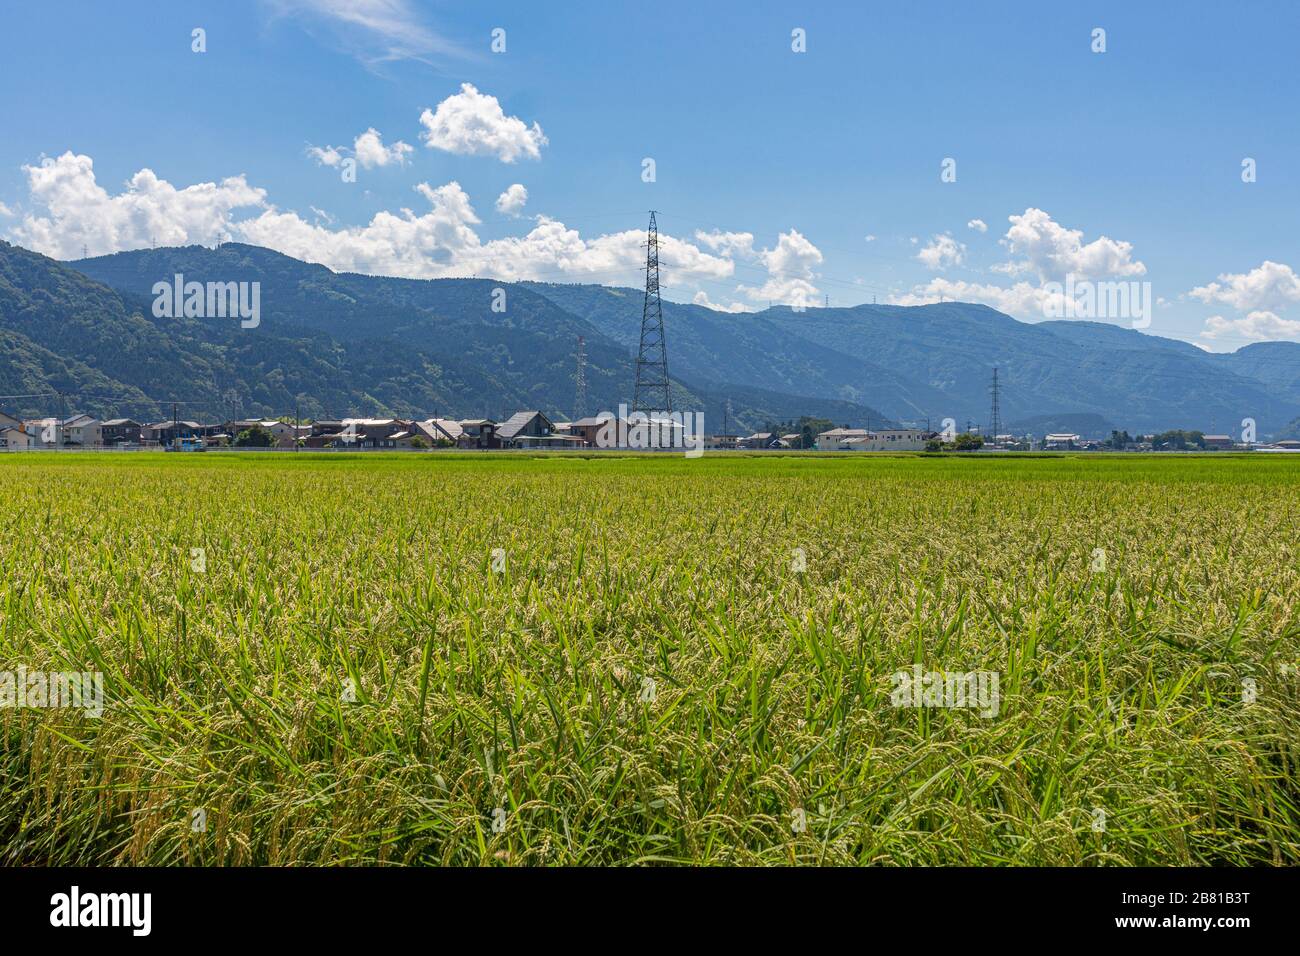 Sommerblick auf das Land Reisfeld, bereit für die Ernte, mit Pylon, Bauernhäusern und Bergen im Hintergrund. Kanazawa, Präfektur Ishikawa, Stockfoto